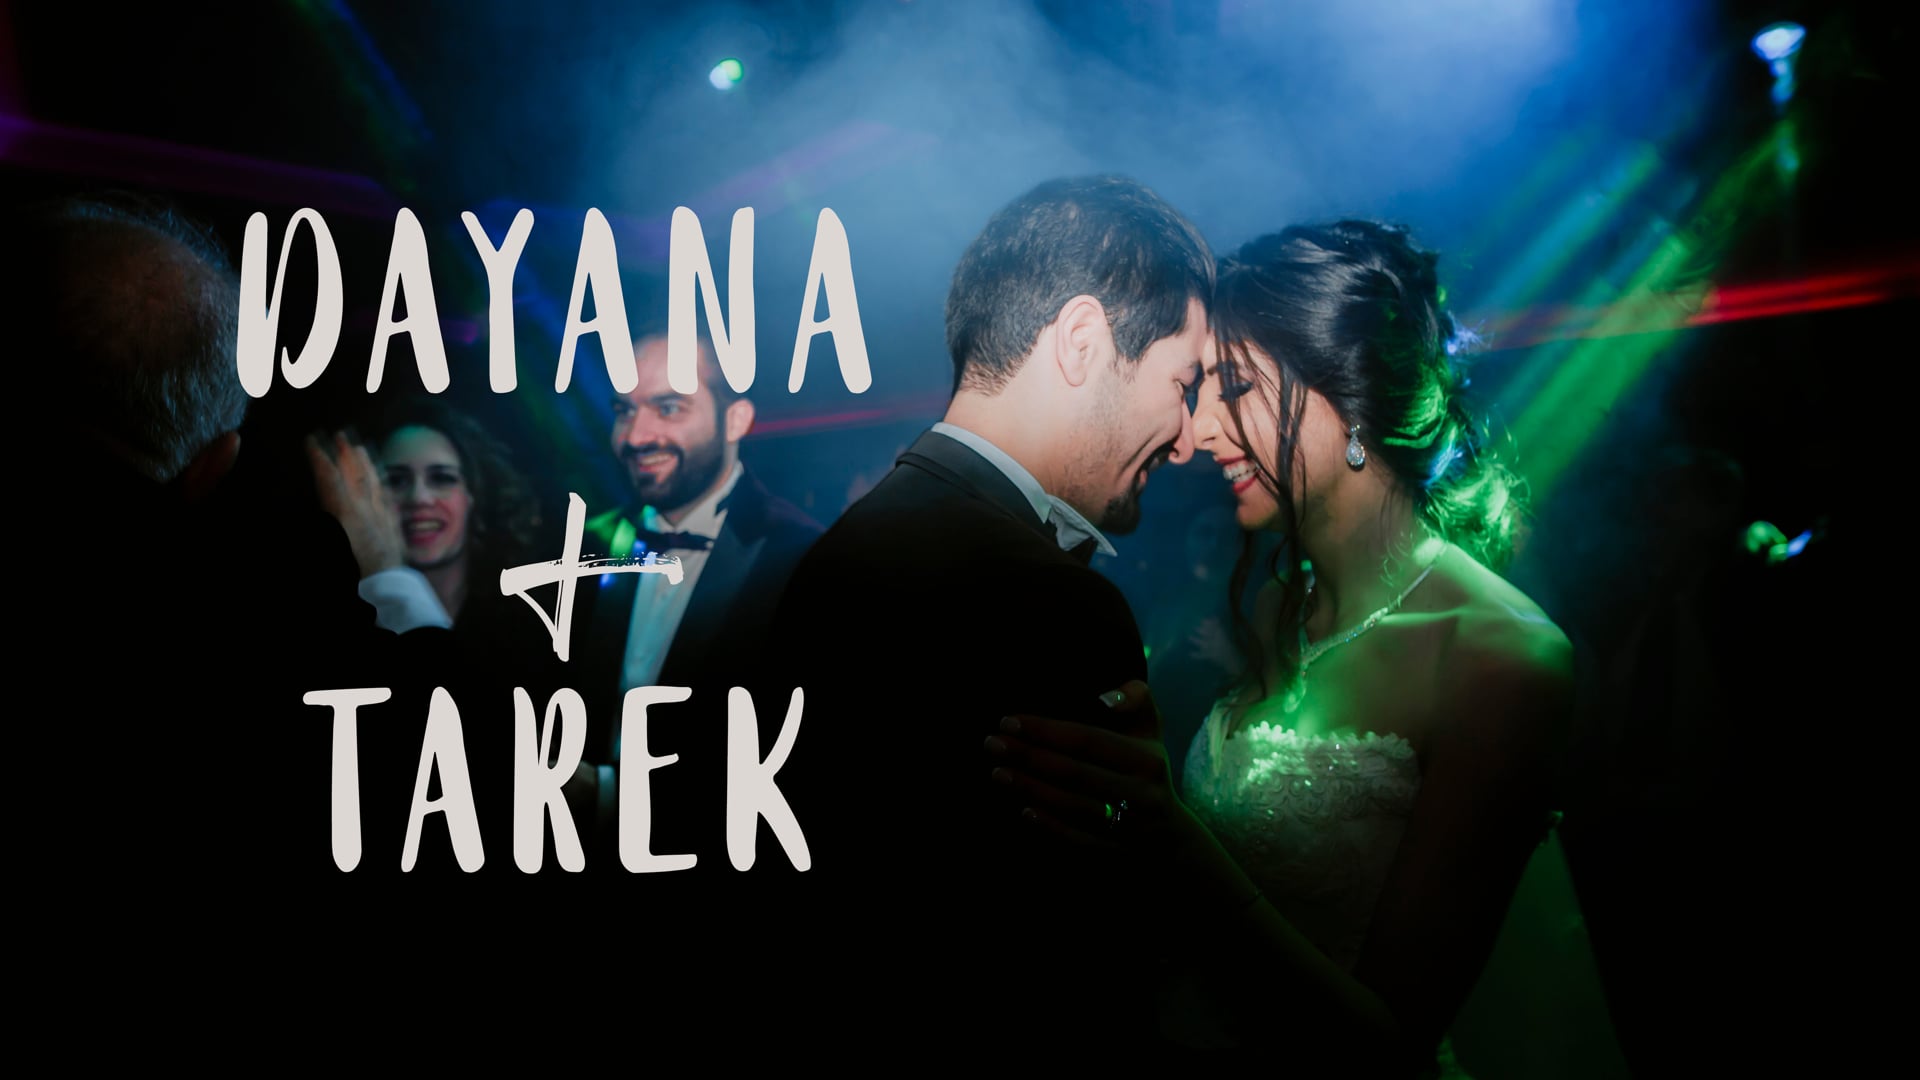 Dayana+Tarek Wedding Film Teaser| Istanbul